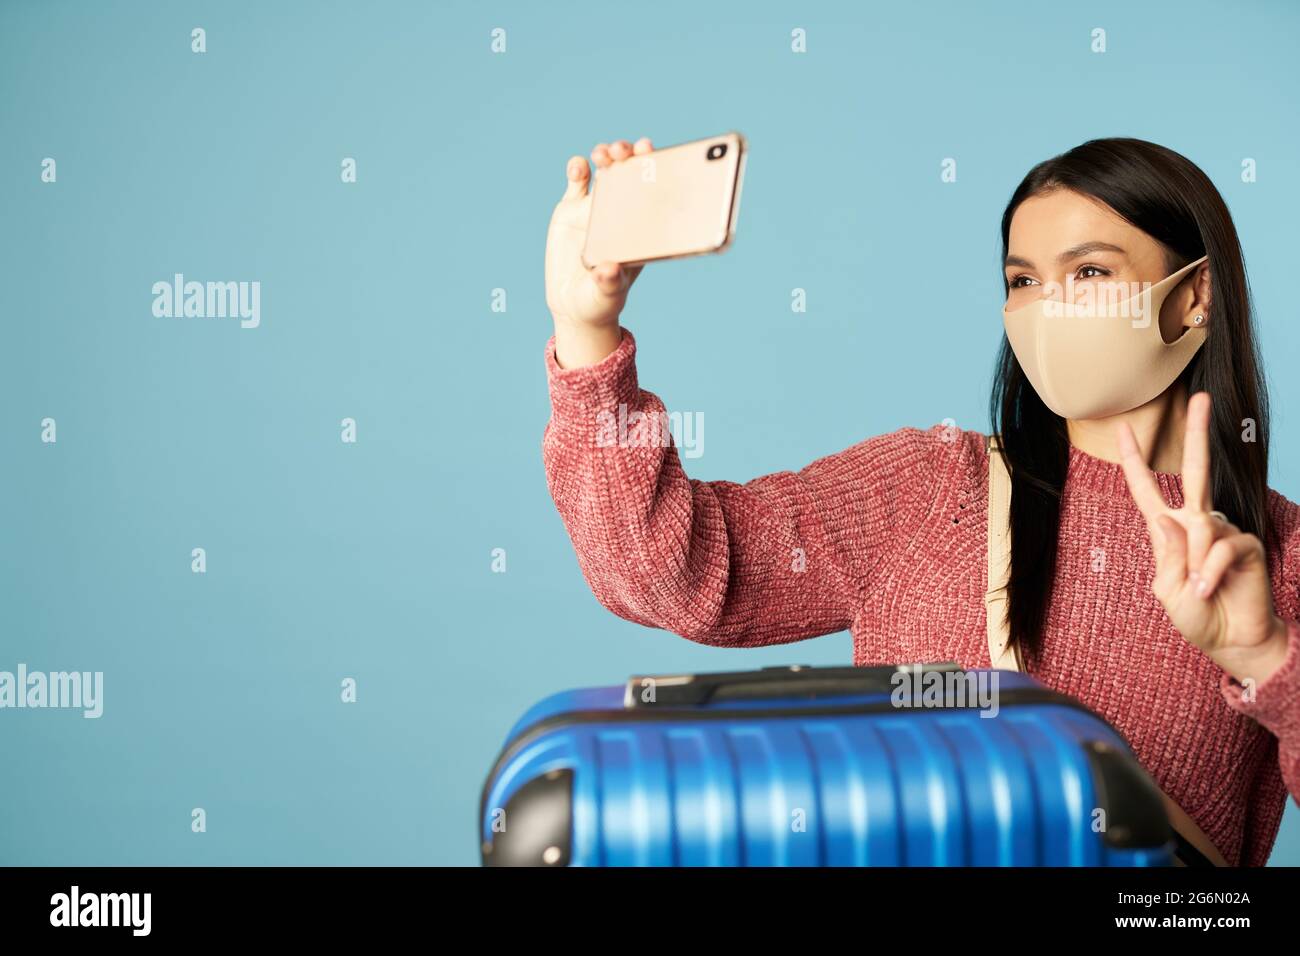 Junge Dame nimmt Selfie, während sie das Mobiltelefon hält Stockfoto